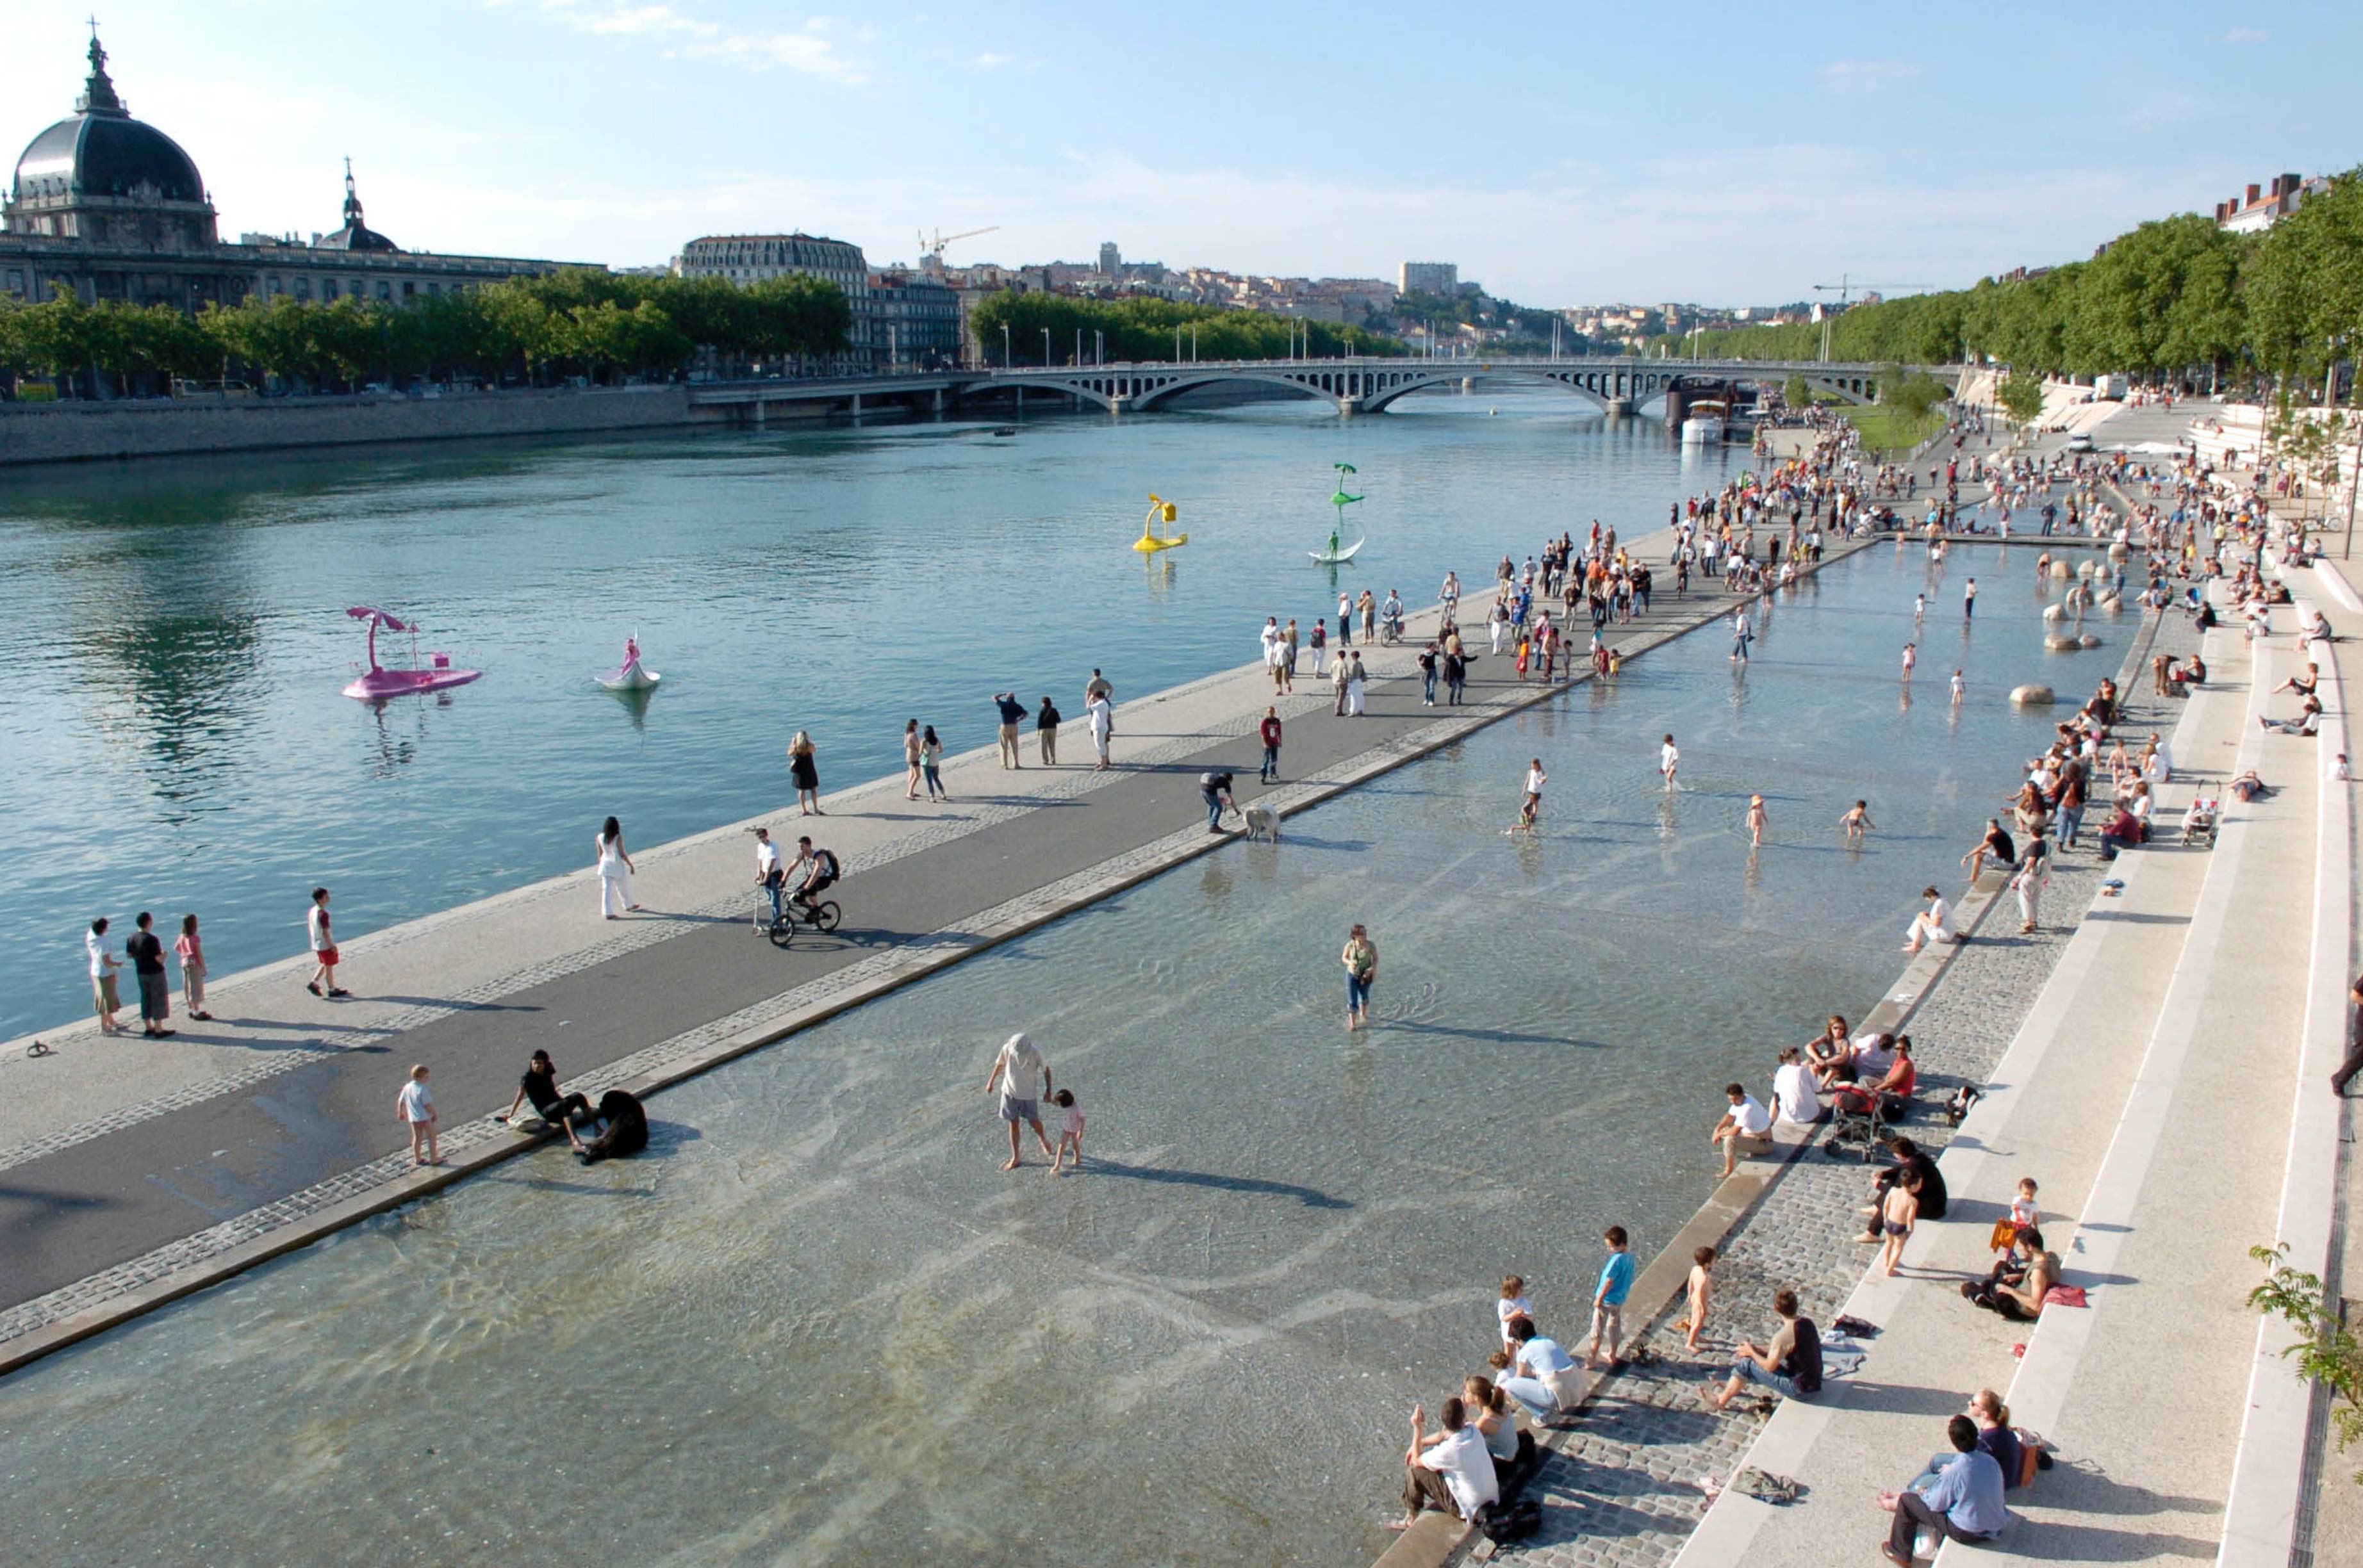 100 villes climatiquement neutres d'ici 2030 : Lyon (et Grenoble) font partie des huit villes françaises retenues